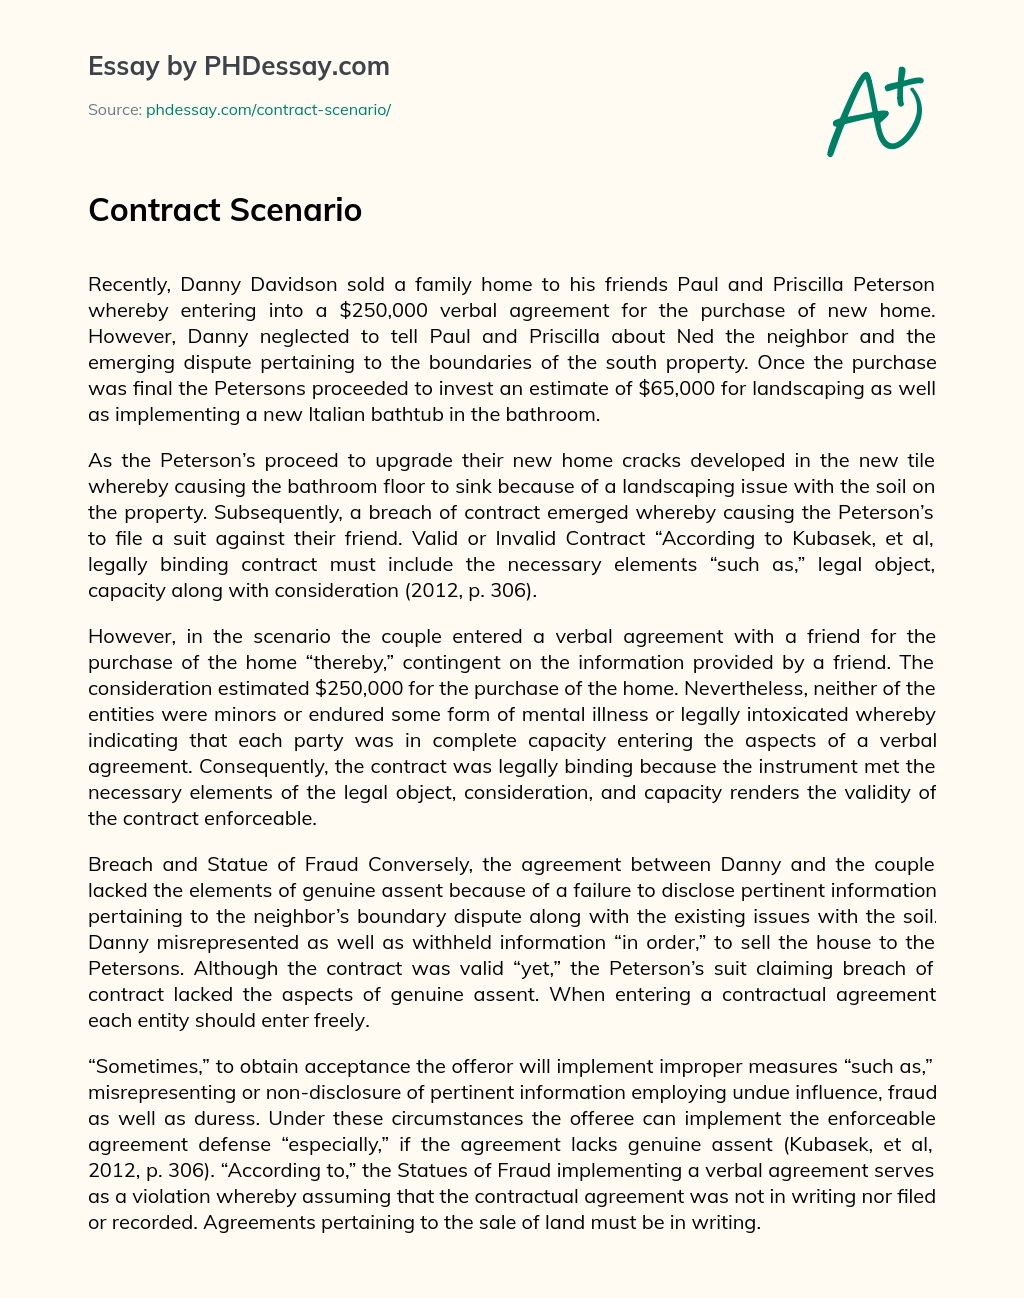 Contract Scenario essay